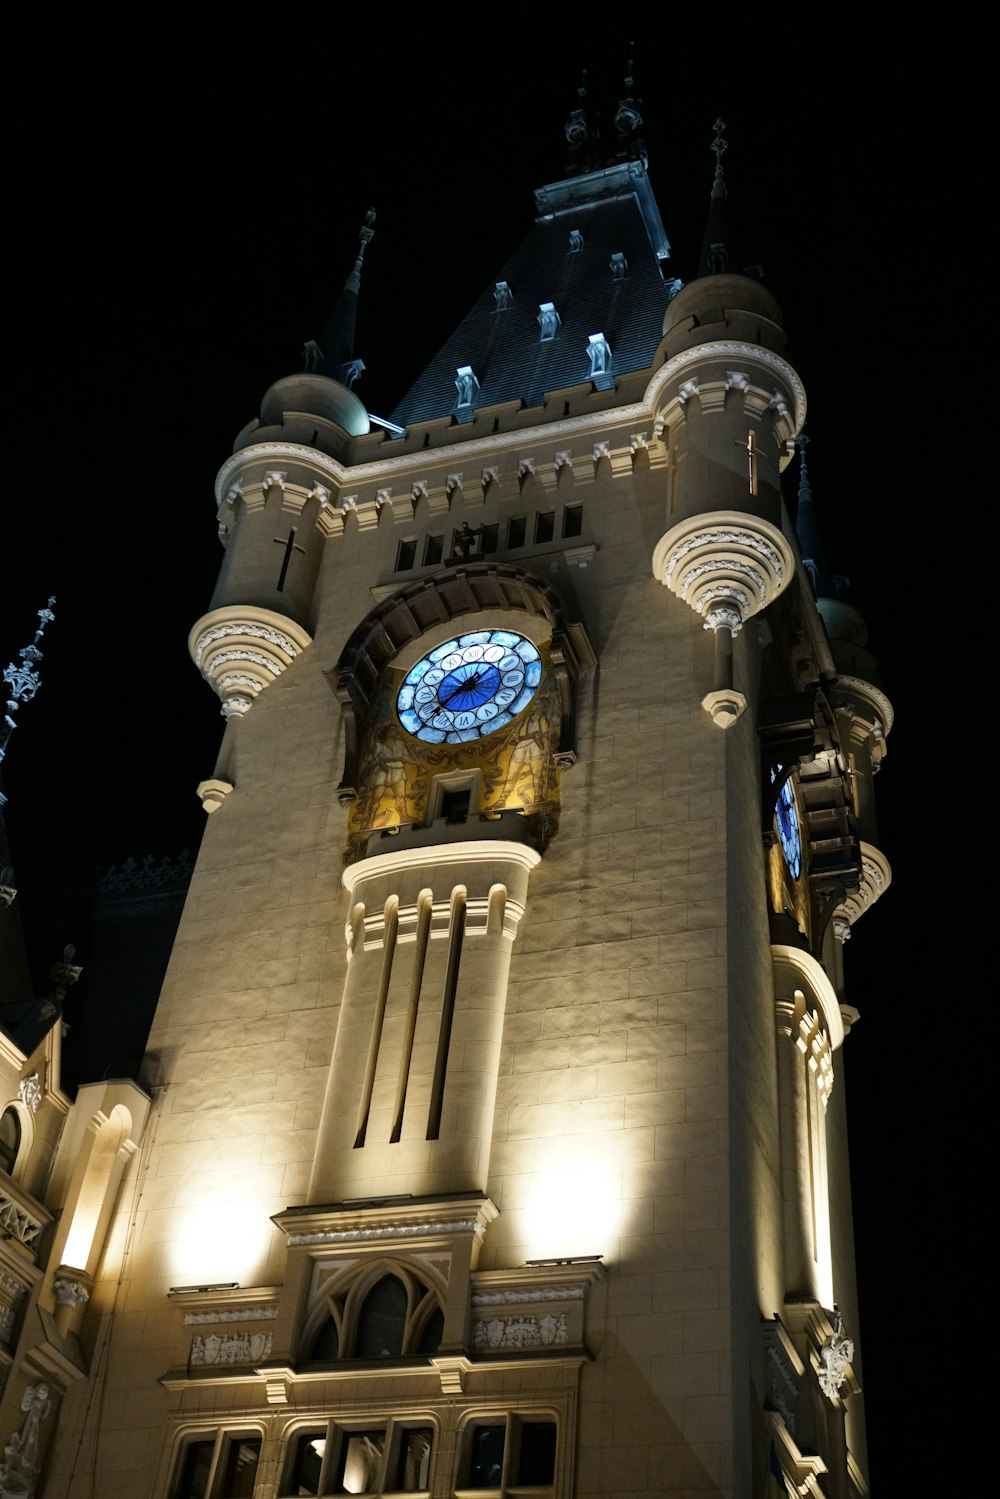 uma grande torre do relógio iluminada à noite